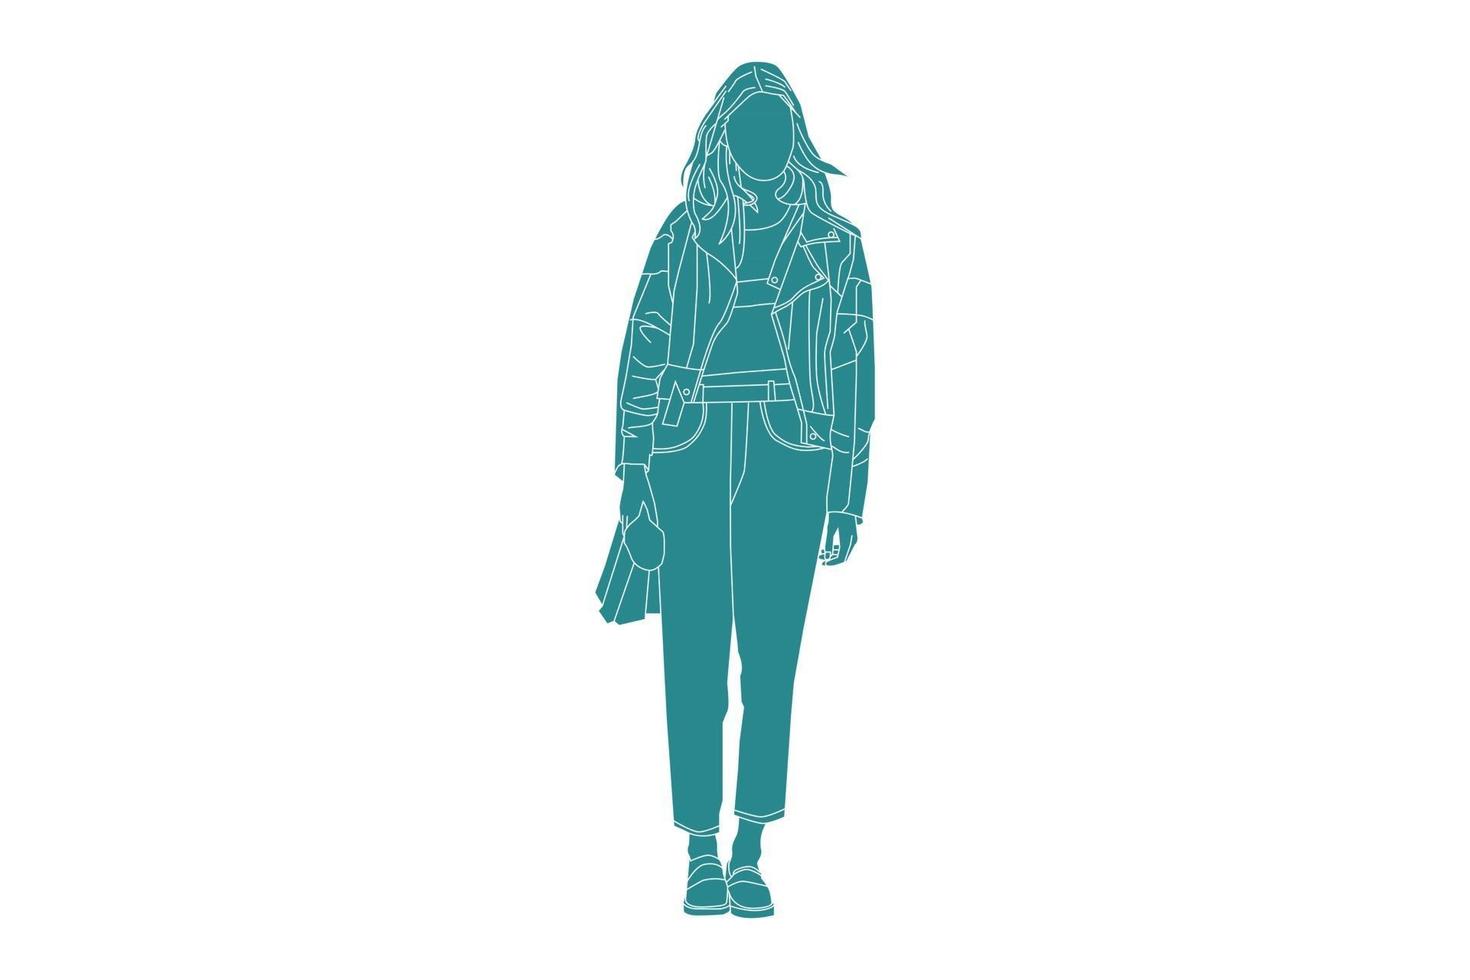 Vektor-Illustration der modischen Frau auf der Nebenstraße, flacher Stil mit Umriss vektor